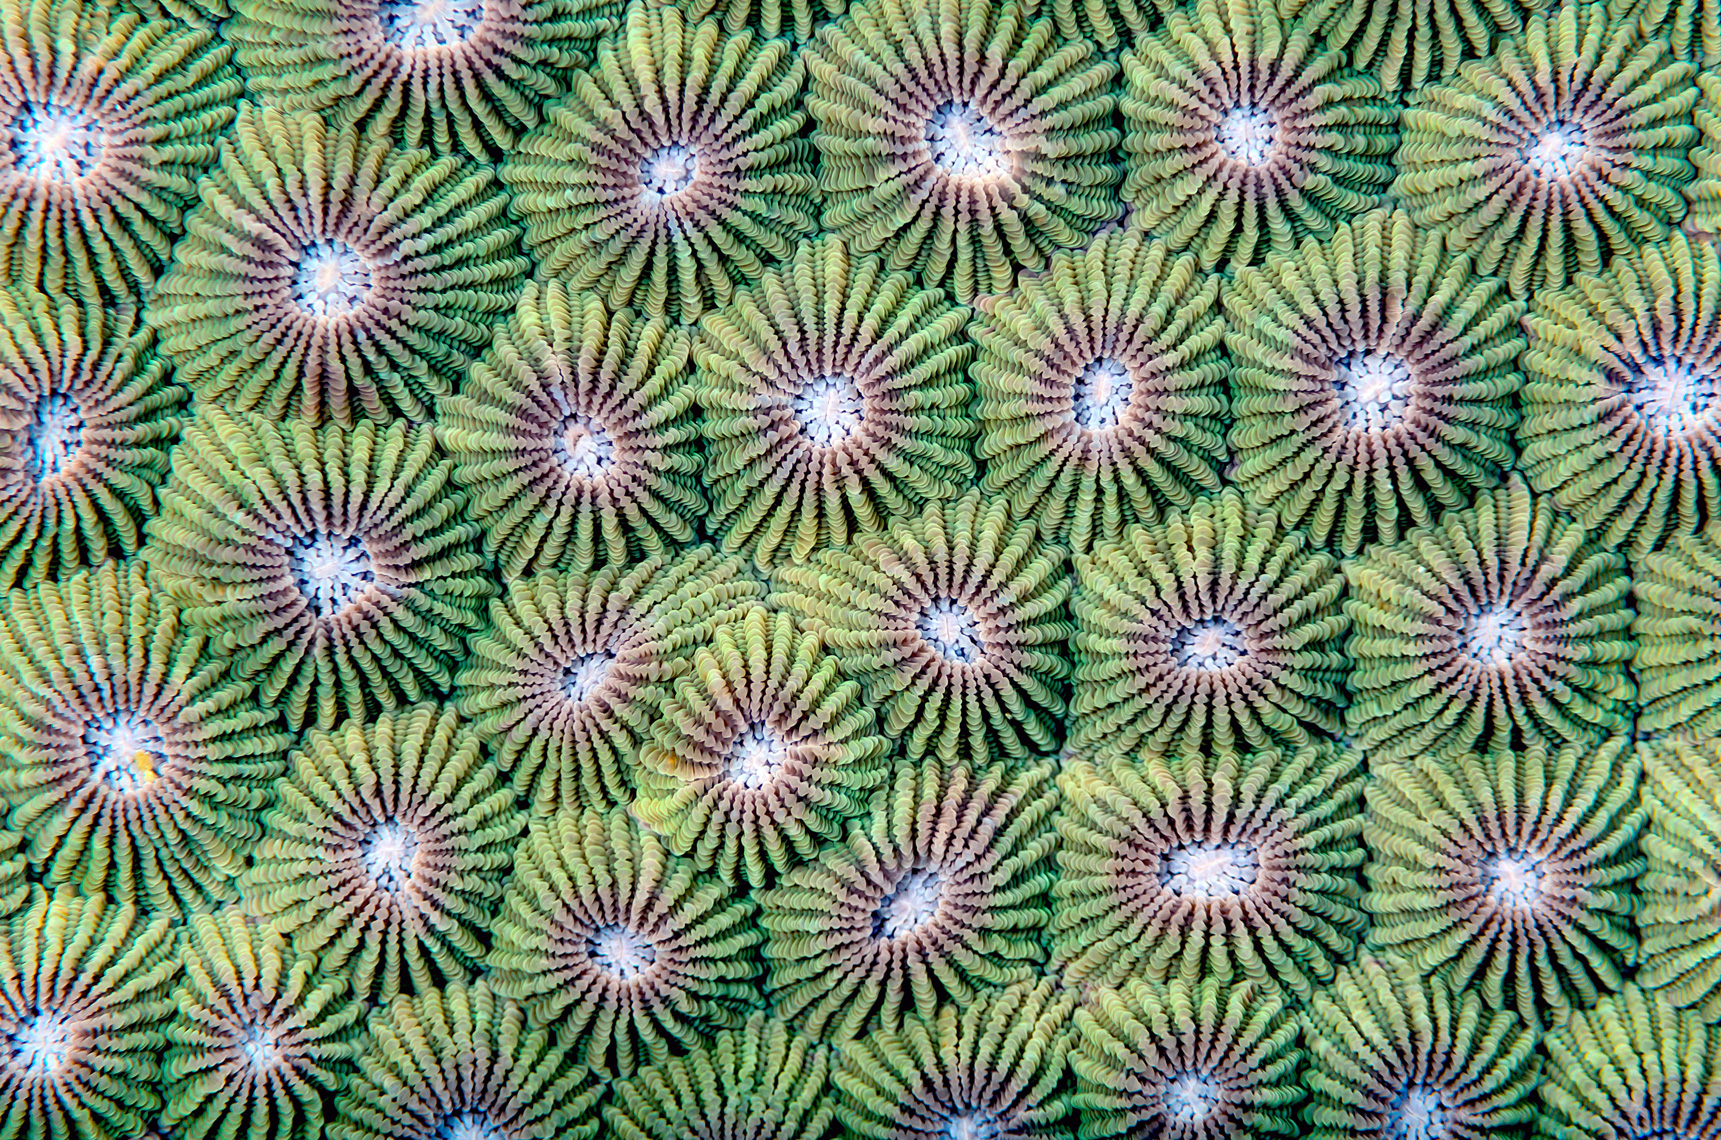 Green coral polyps